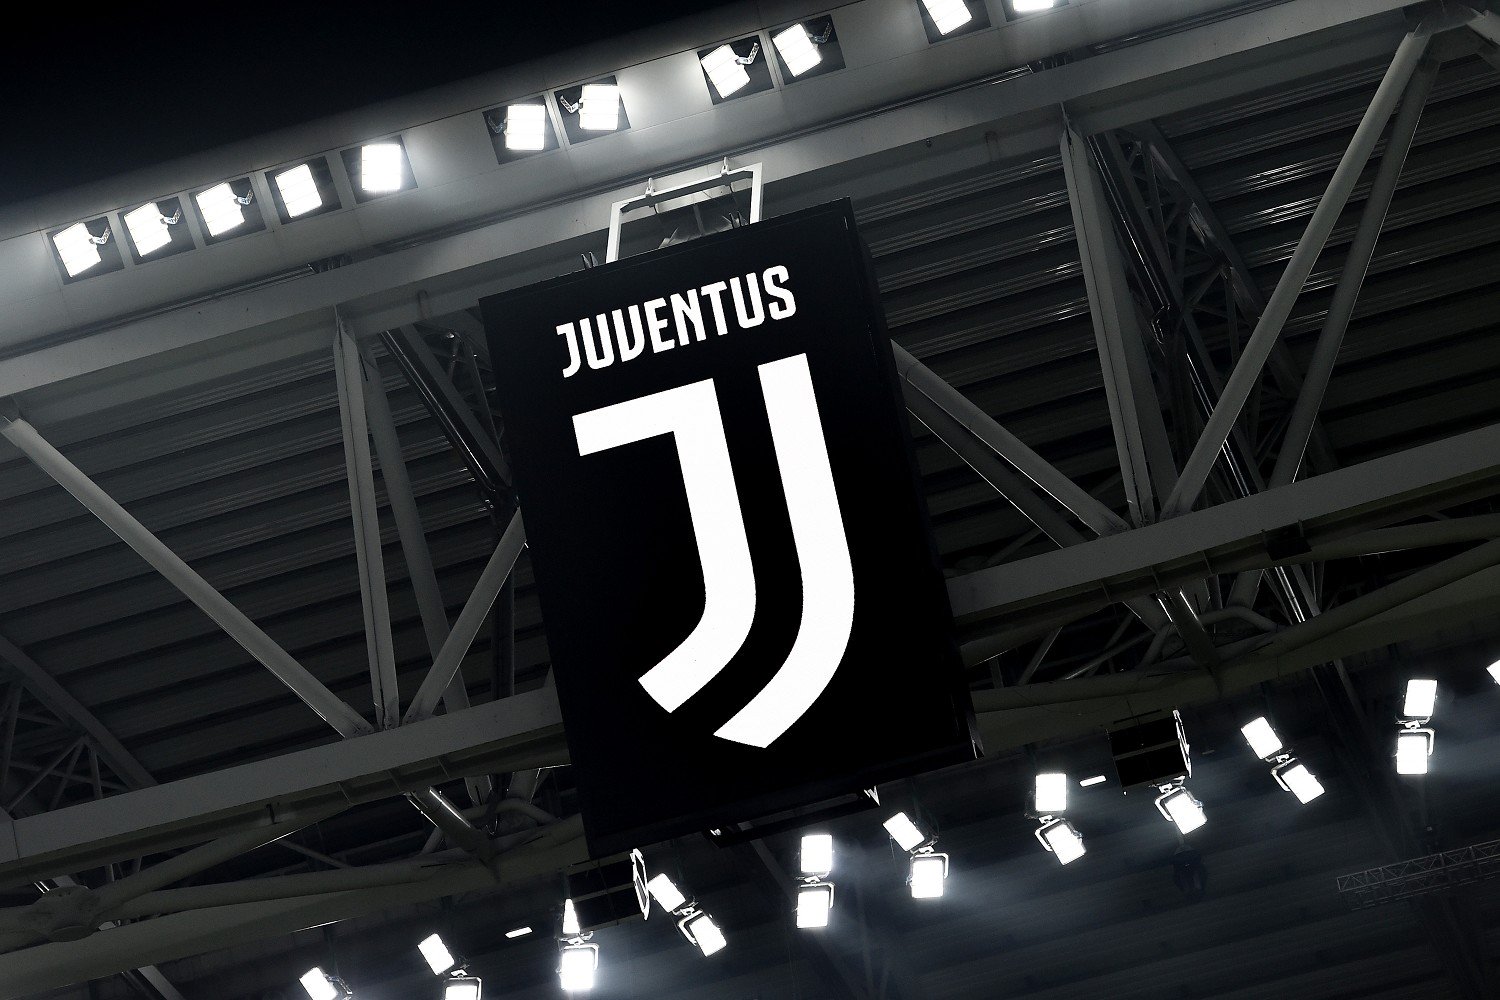 Rinnovo in arrivo, la Juventus lancia lo spoiler sui social |  Sport e Vai